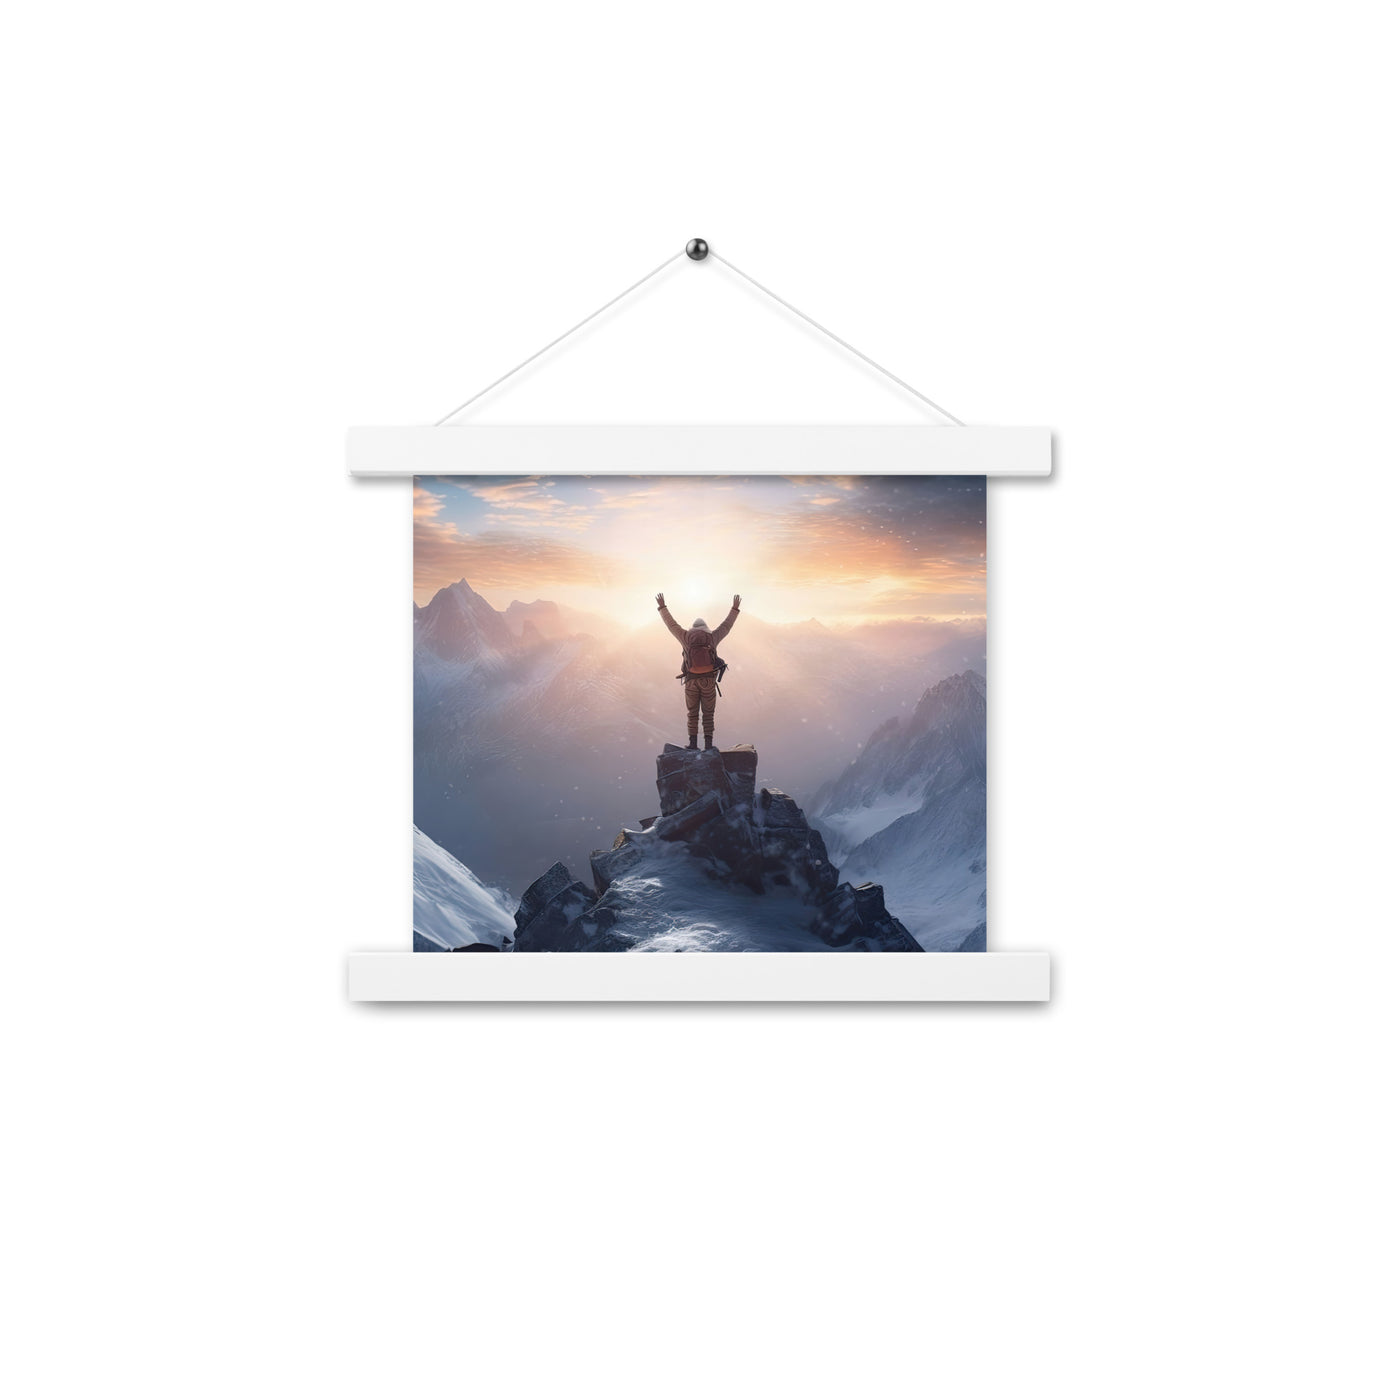 Mann auf der Spitze eines Berges - Landschaftsmalerei - Premium Poster mit Aufhängung berge xxx 25.4 x 25.4 cm